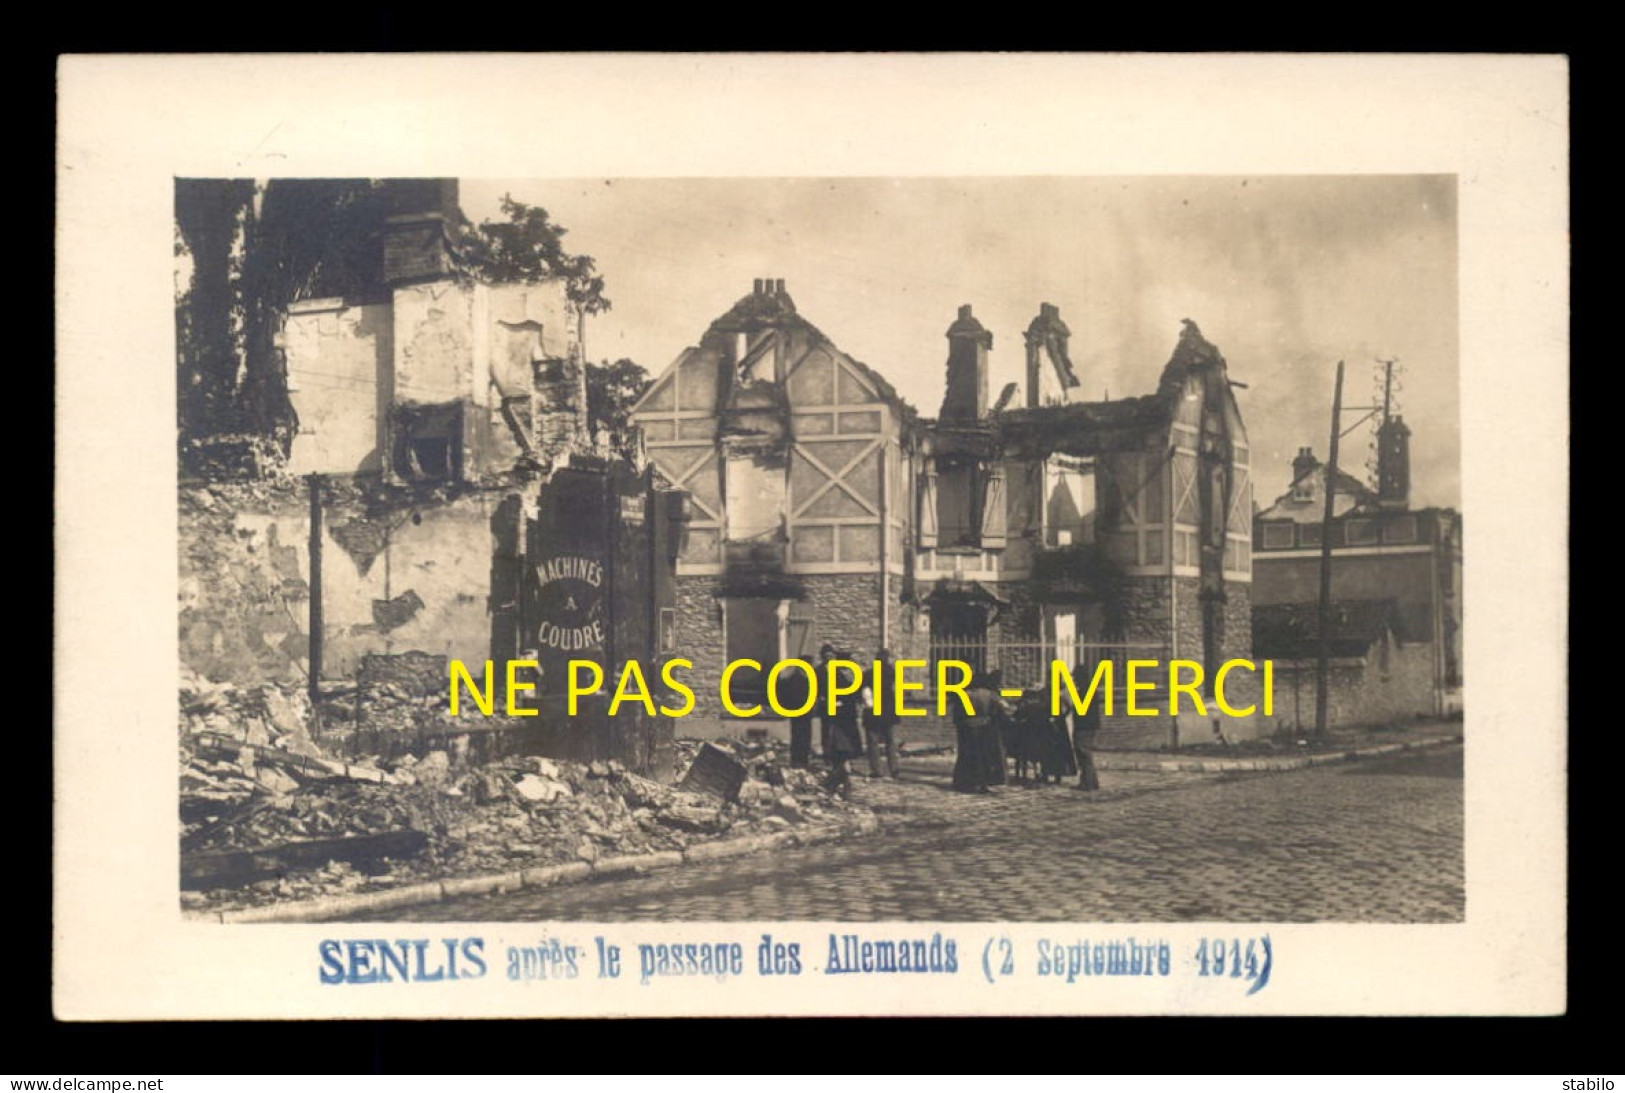 60 - SENLIS - APRES LE PASSAGE DES ALLEMANDS LE 2 SEPTEMBRE 1914 - CARTE PHOTO ORIGINALE - Senlis